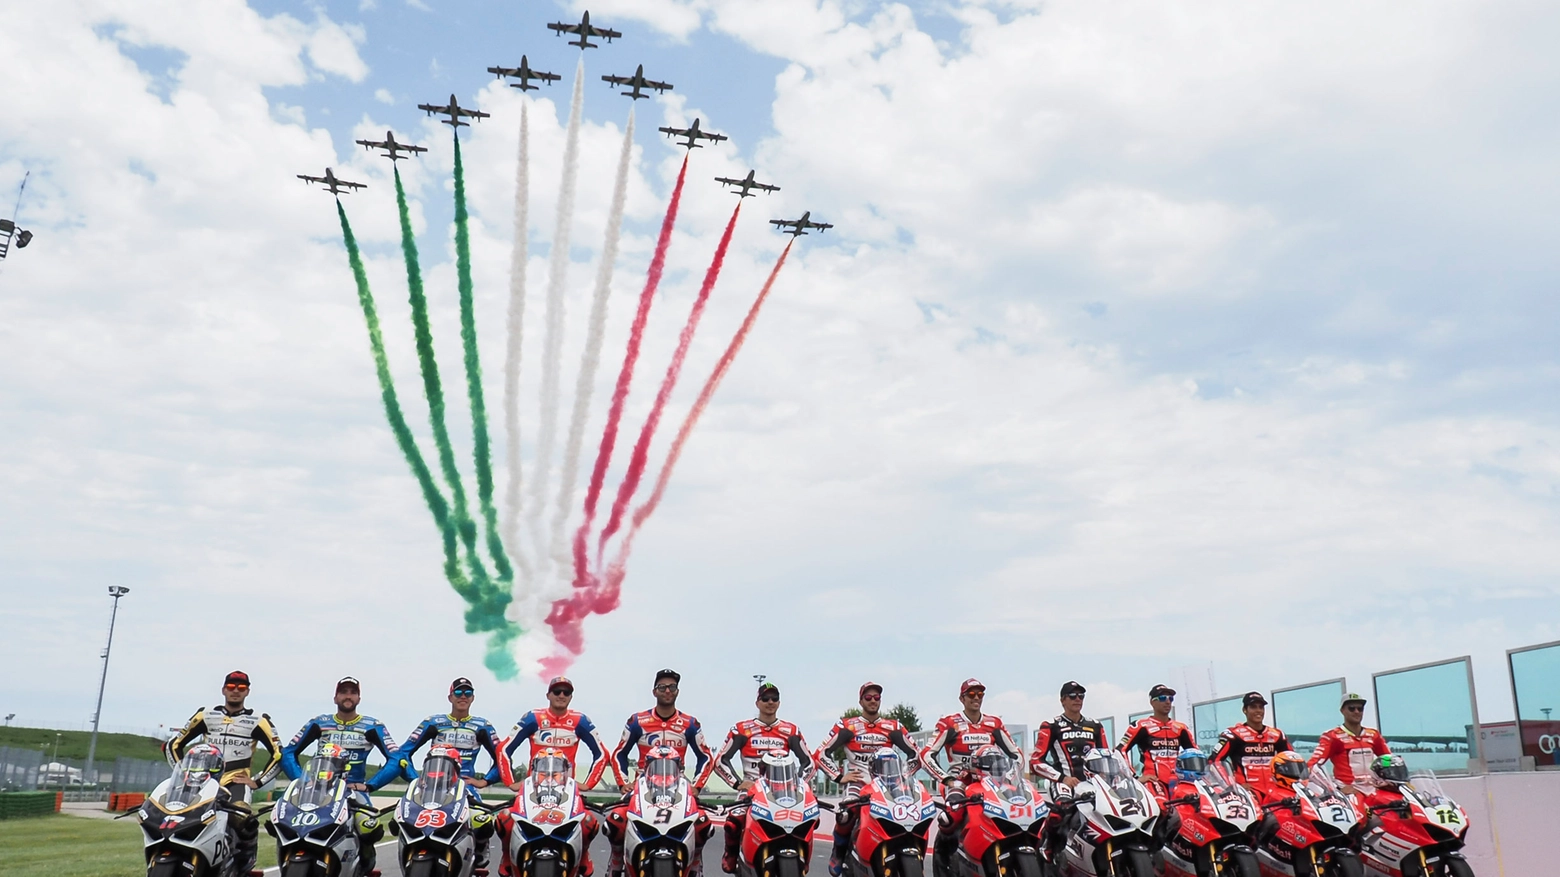 Moto e frecce tricolori, è il World Ducati Week